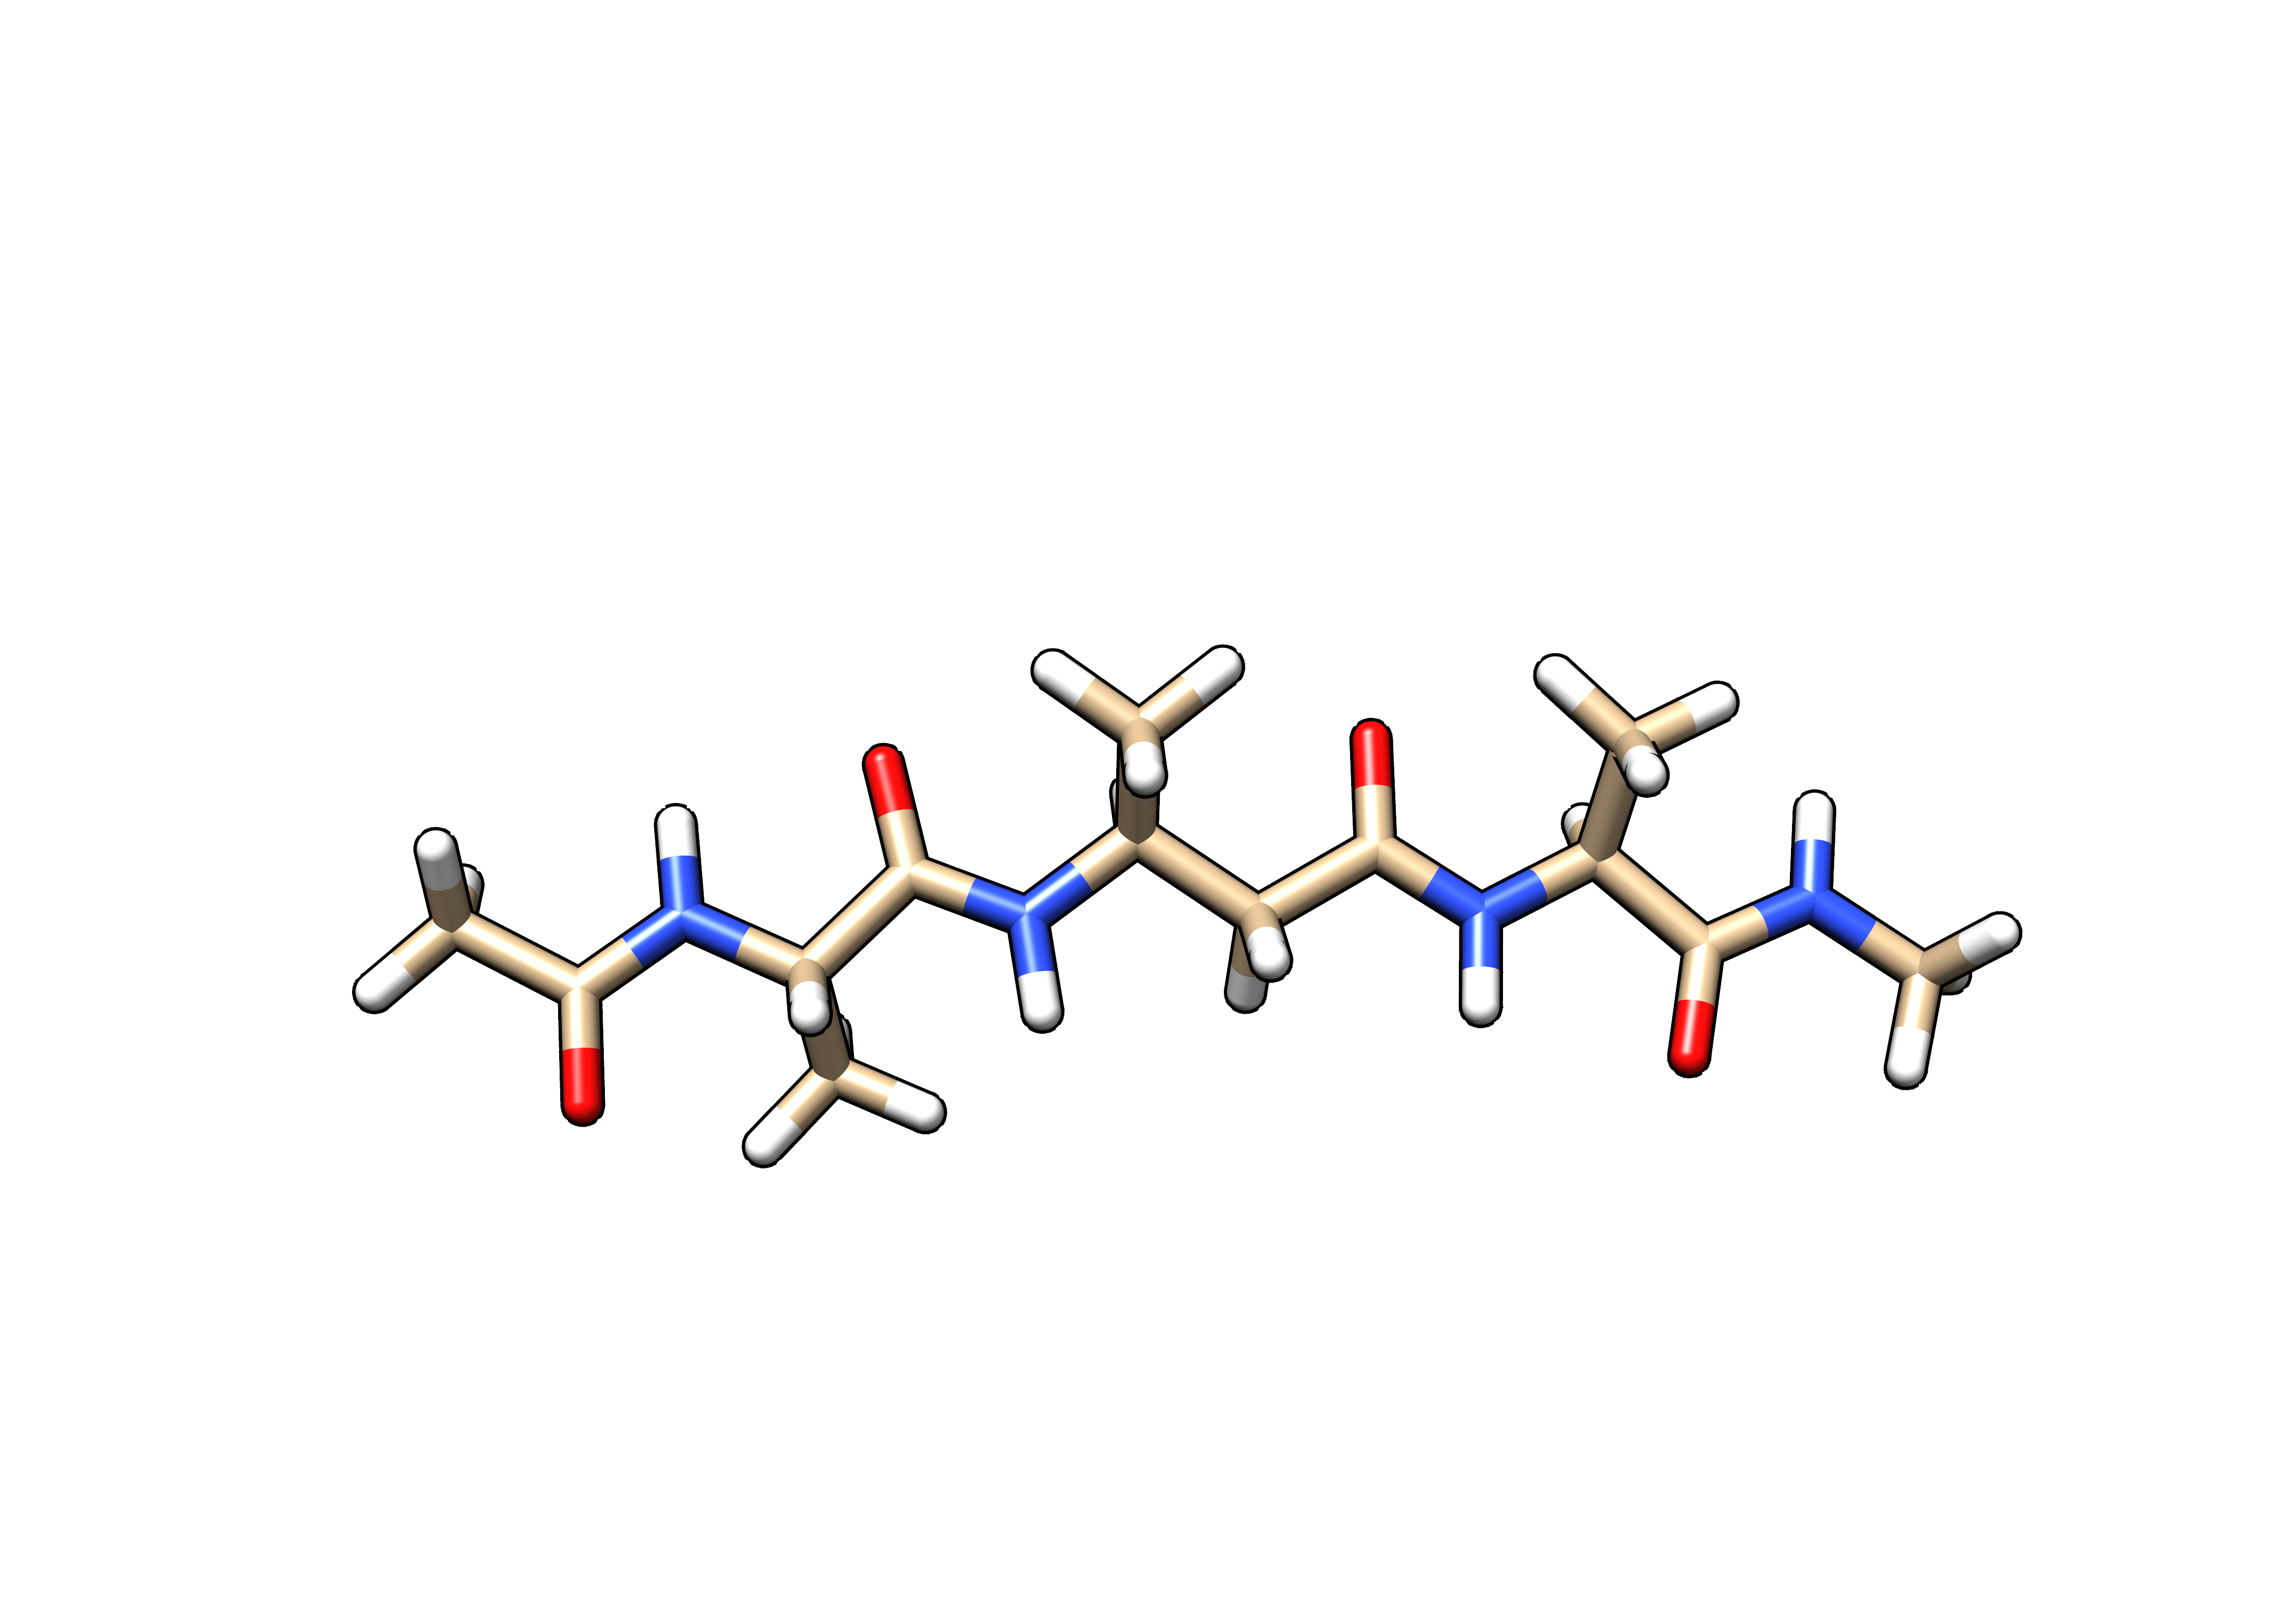 β3Alanine (B3A) tetrapeptide mimetic (peptidomimetic) solvated using the water model (SPC/Eb) intended for the ff15ipq-m force field.